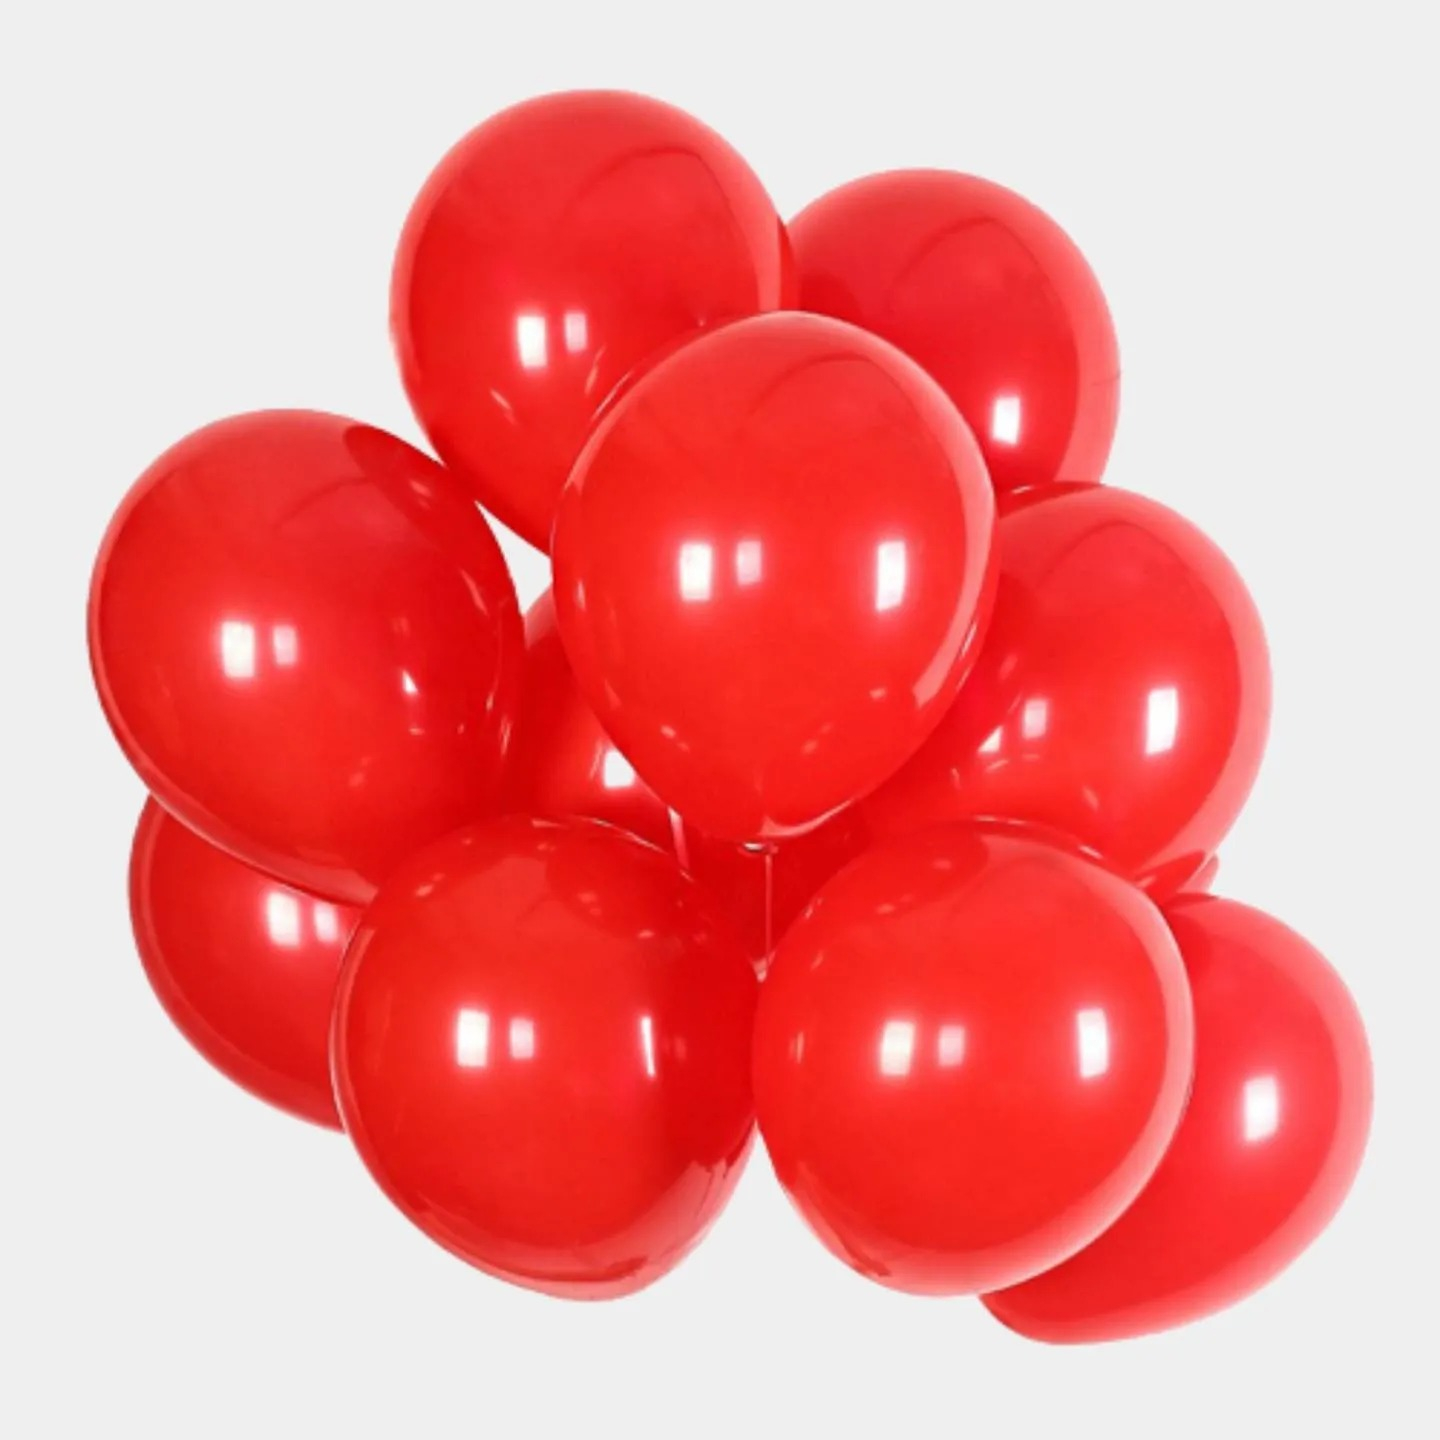 Видео красных шаров. Красные шары. Латексные шарики. Красный воздушный шар. Красные гелевые шары.